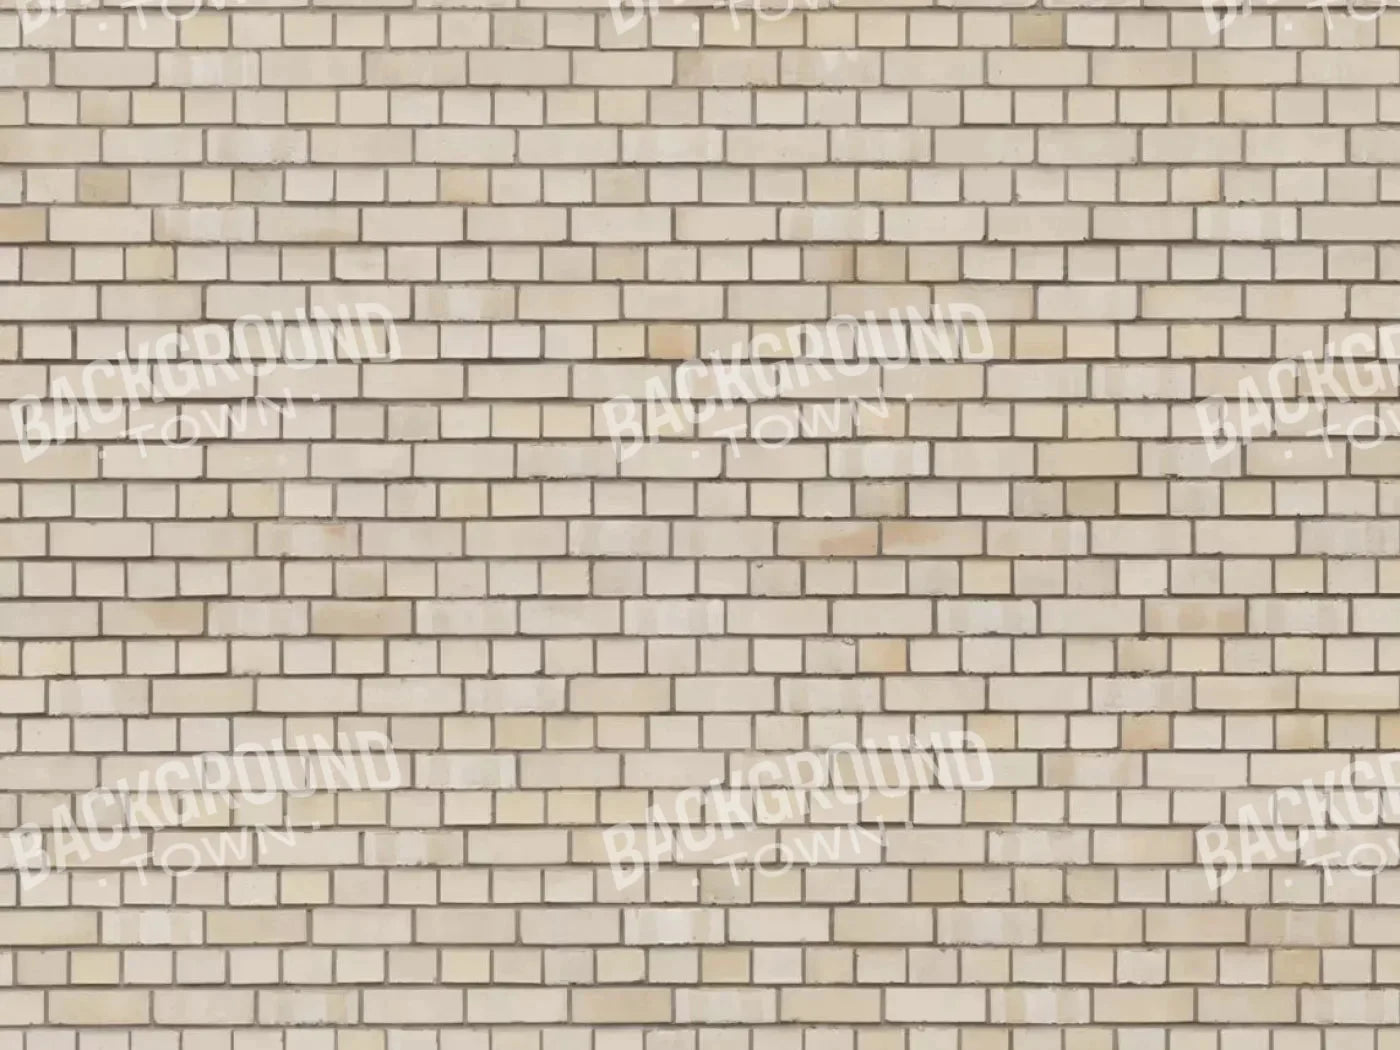 Brickwork Rubbermat Floor 7X5 ( 84 X 60 Inch )